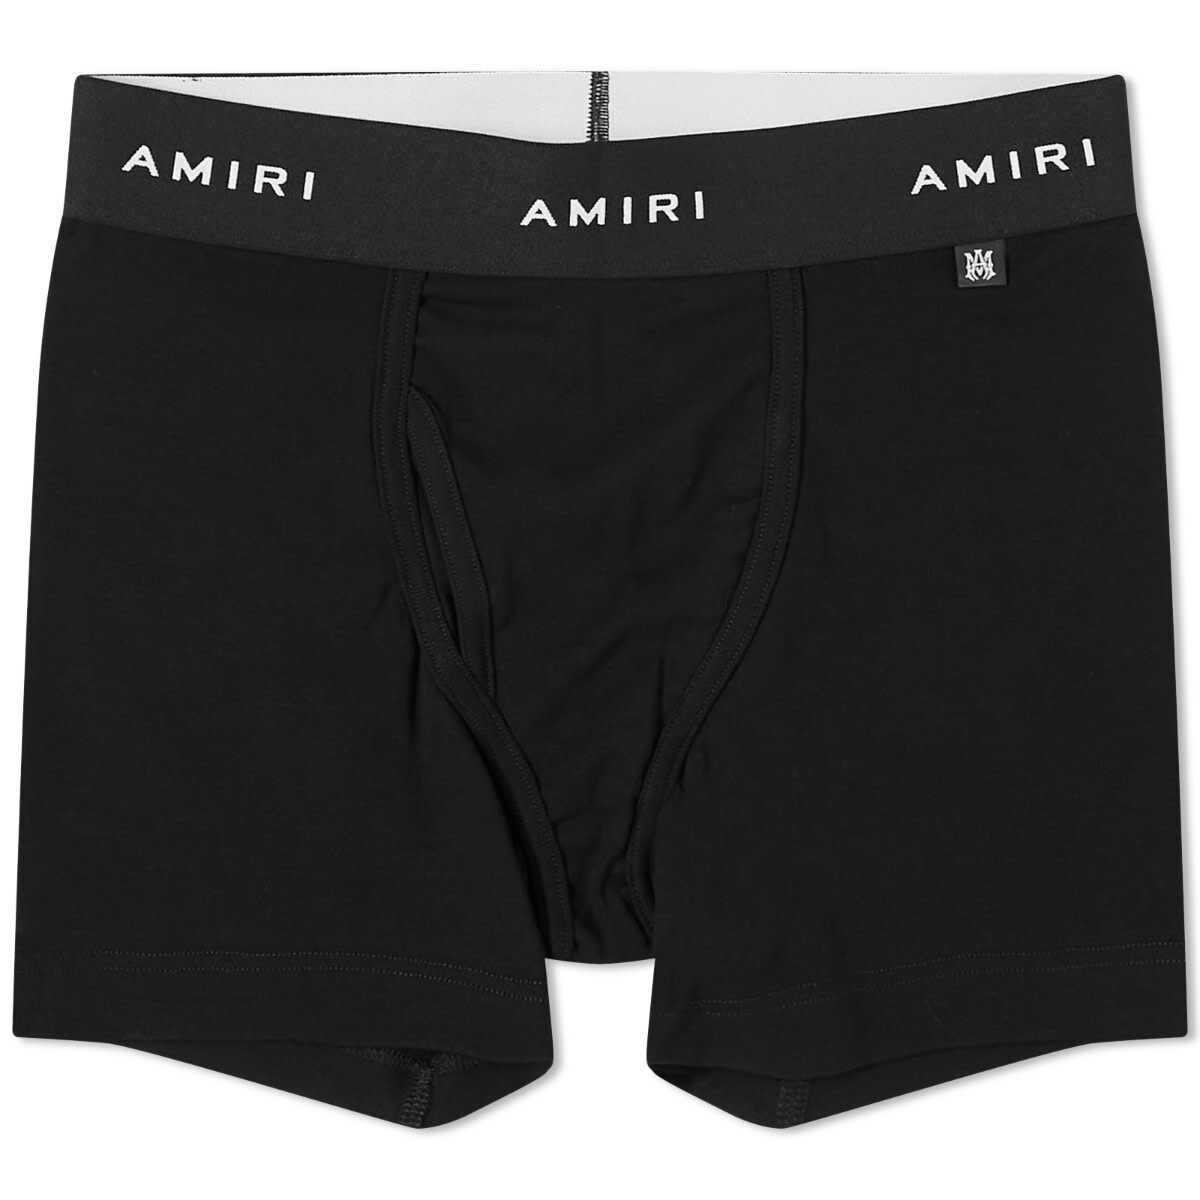 AMIRI Men's Label Boxer Shorts in Black